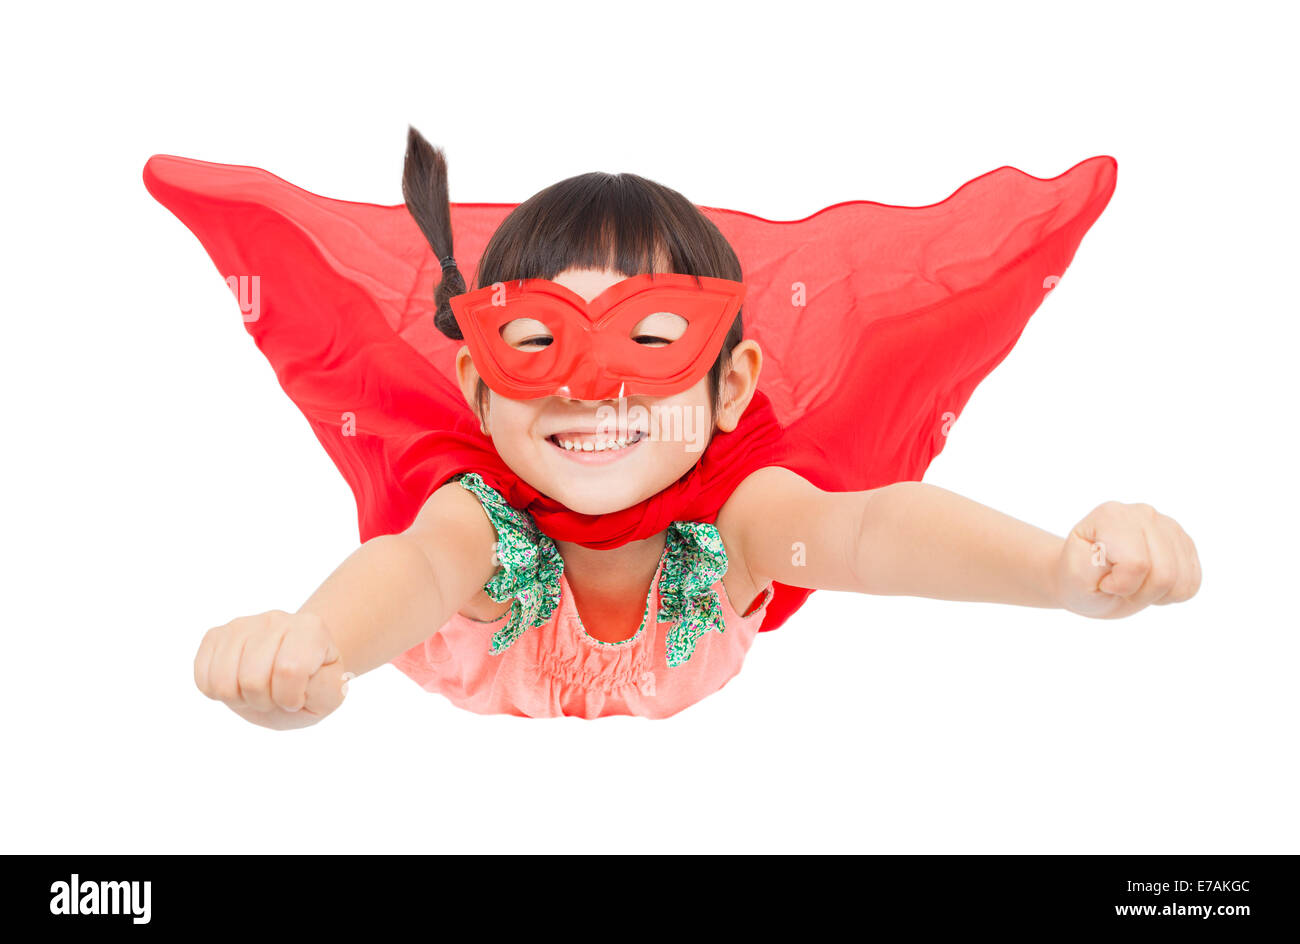 superhero girl flying isolated on white background Stock Photo